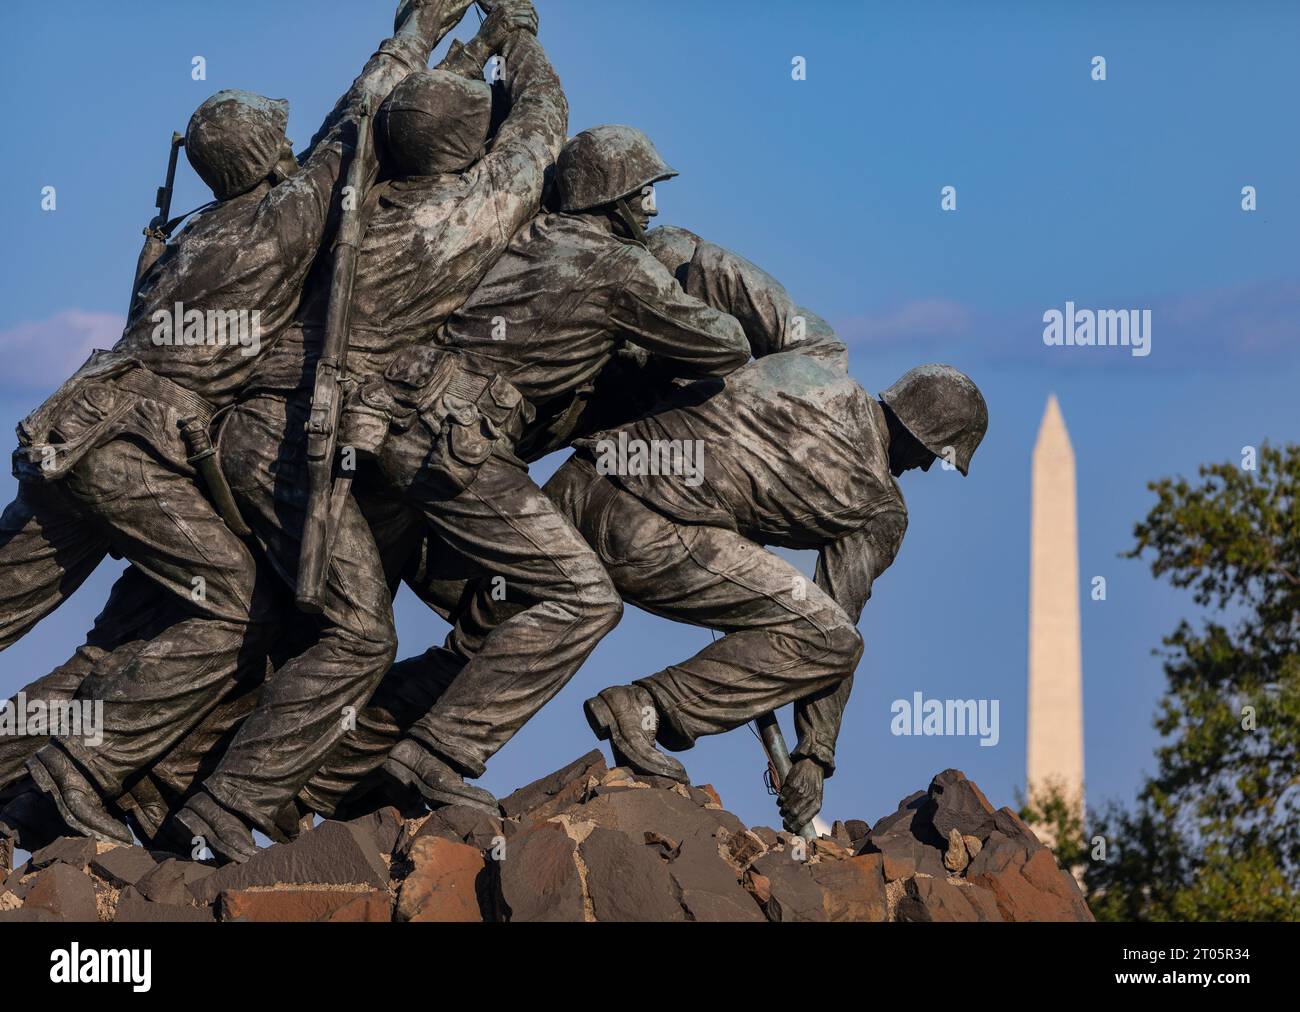 ROSSLYN, ARLINGTON, VIRGINIA, EE.UU. - Detalle del Memorial de Guerra del Cuerpo de Infantería de Marina de los Estados Unidos Iwo Jima. Foto de stock